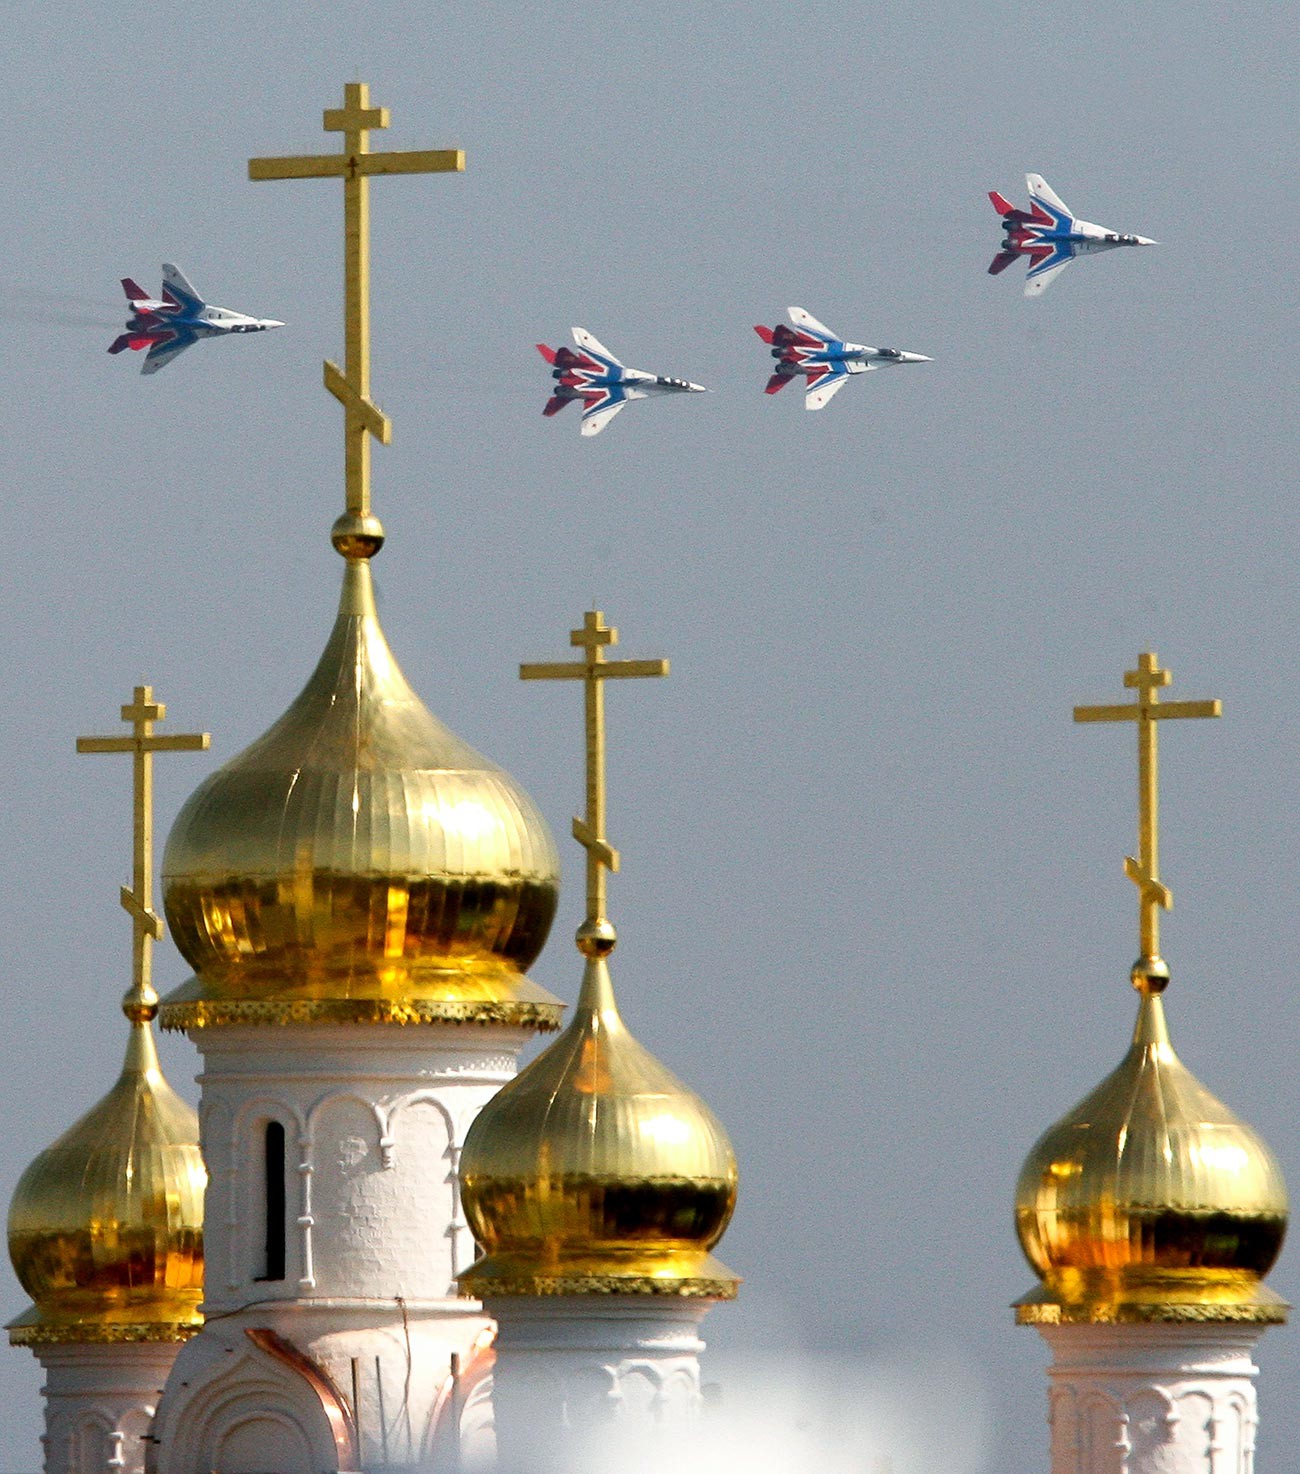 Le groupe de voltige aérienne Striji vole au-dessus d'une église orthodoxe au cours du salon aérospatial MAKS-2007
